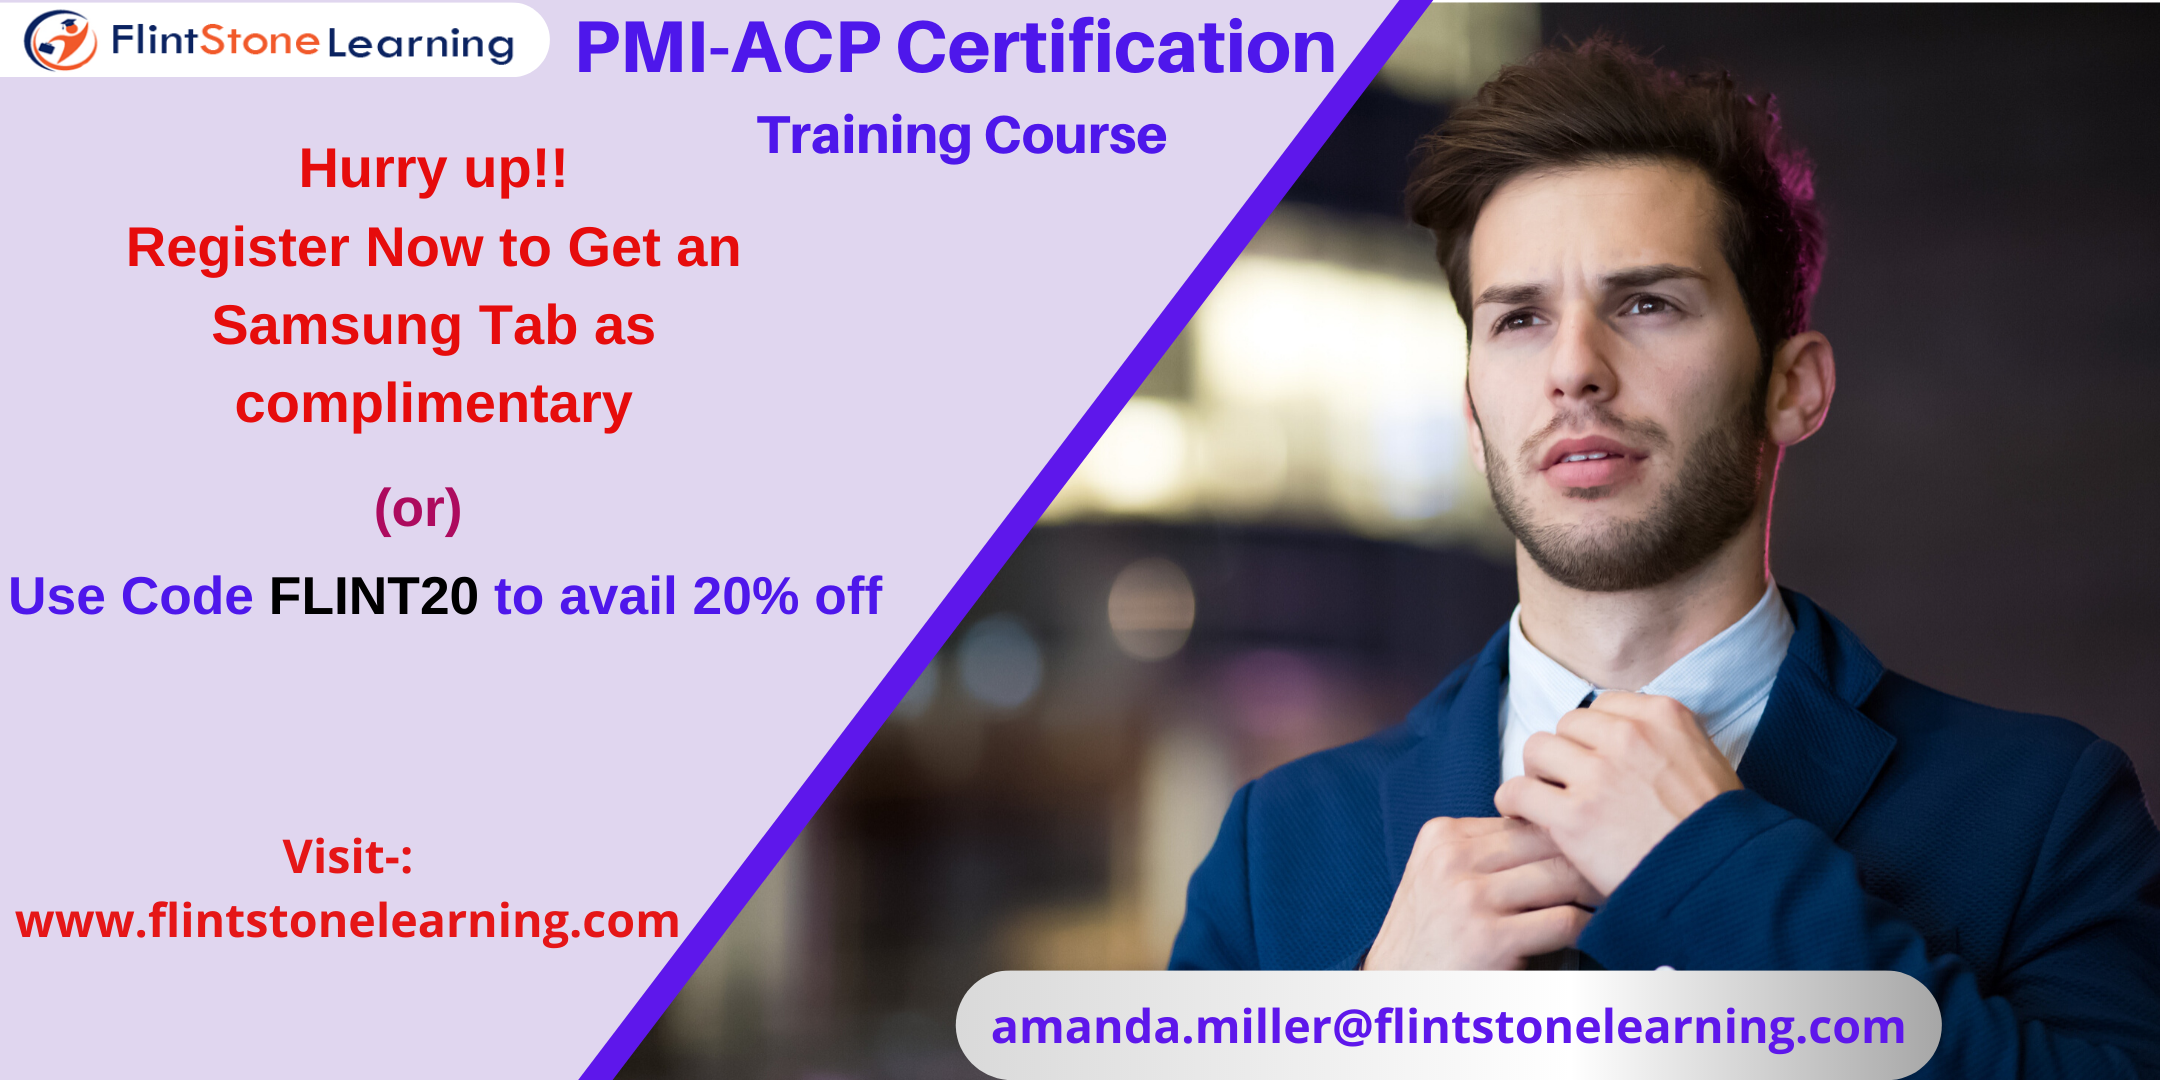 PMI-ACP Certification Training Course in El Segundo, CA